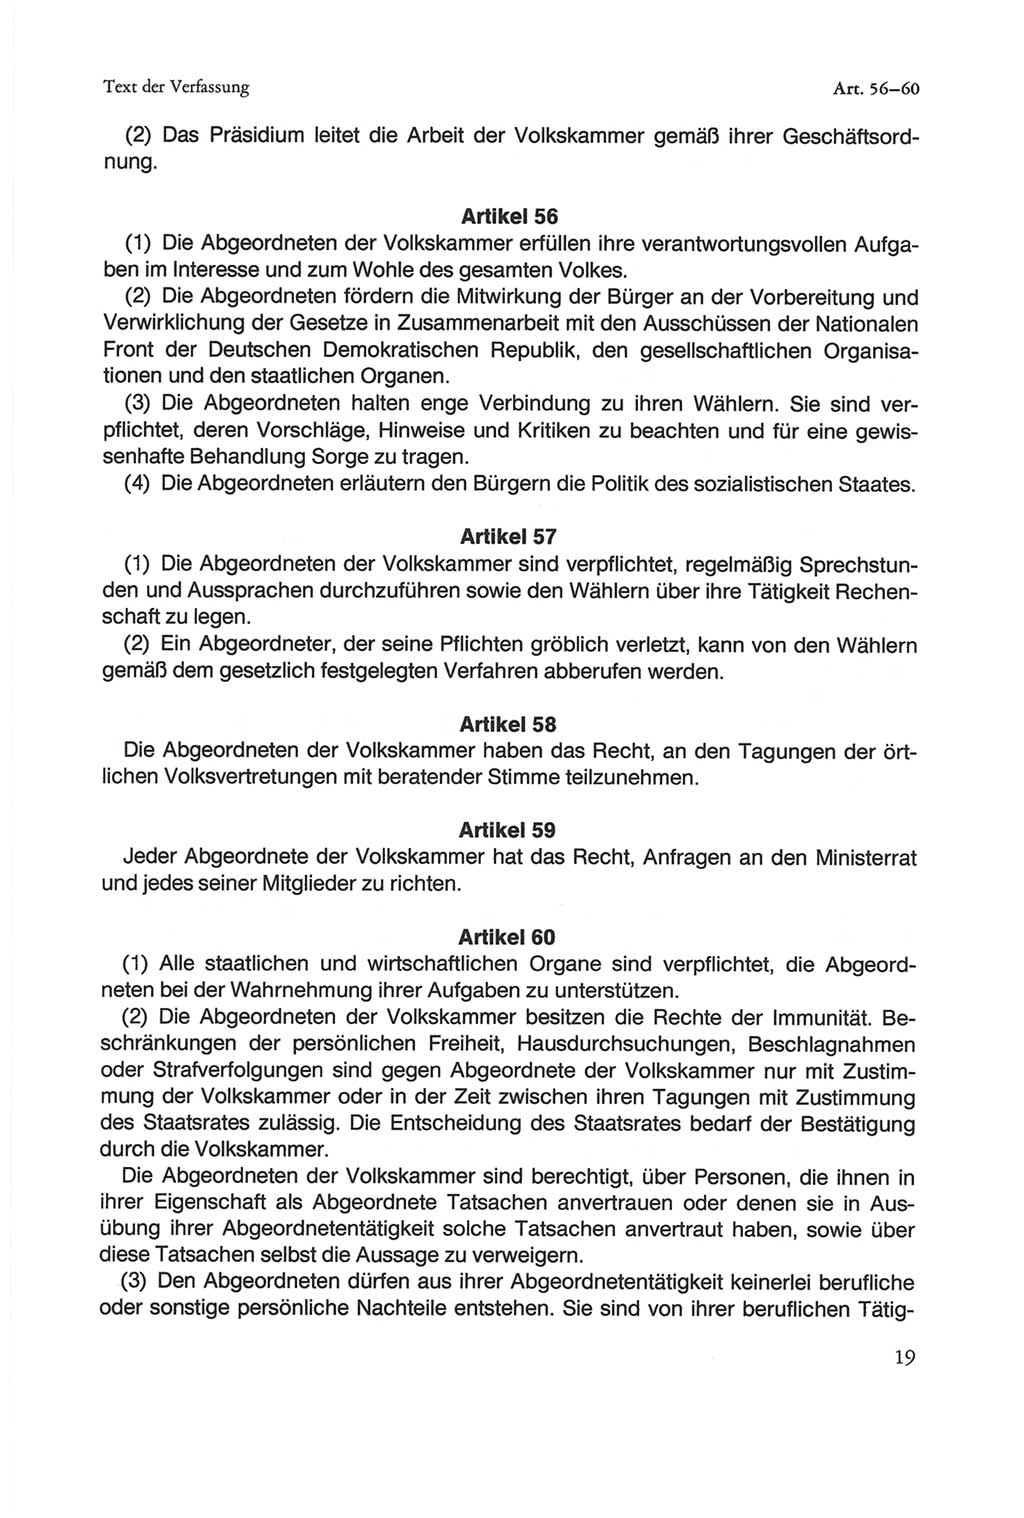 Die sozialistische Verfassung der Deutschen Demokratischen Republik (DDR), Kommentar 1982, Seite 19 (Soz. Verf. DDR Komm. 1982, S. 19)